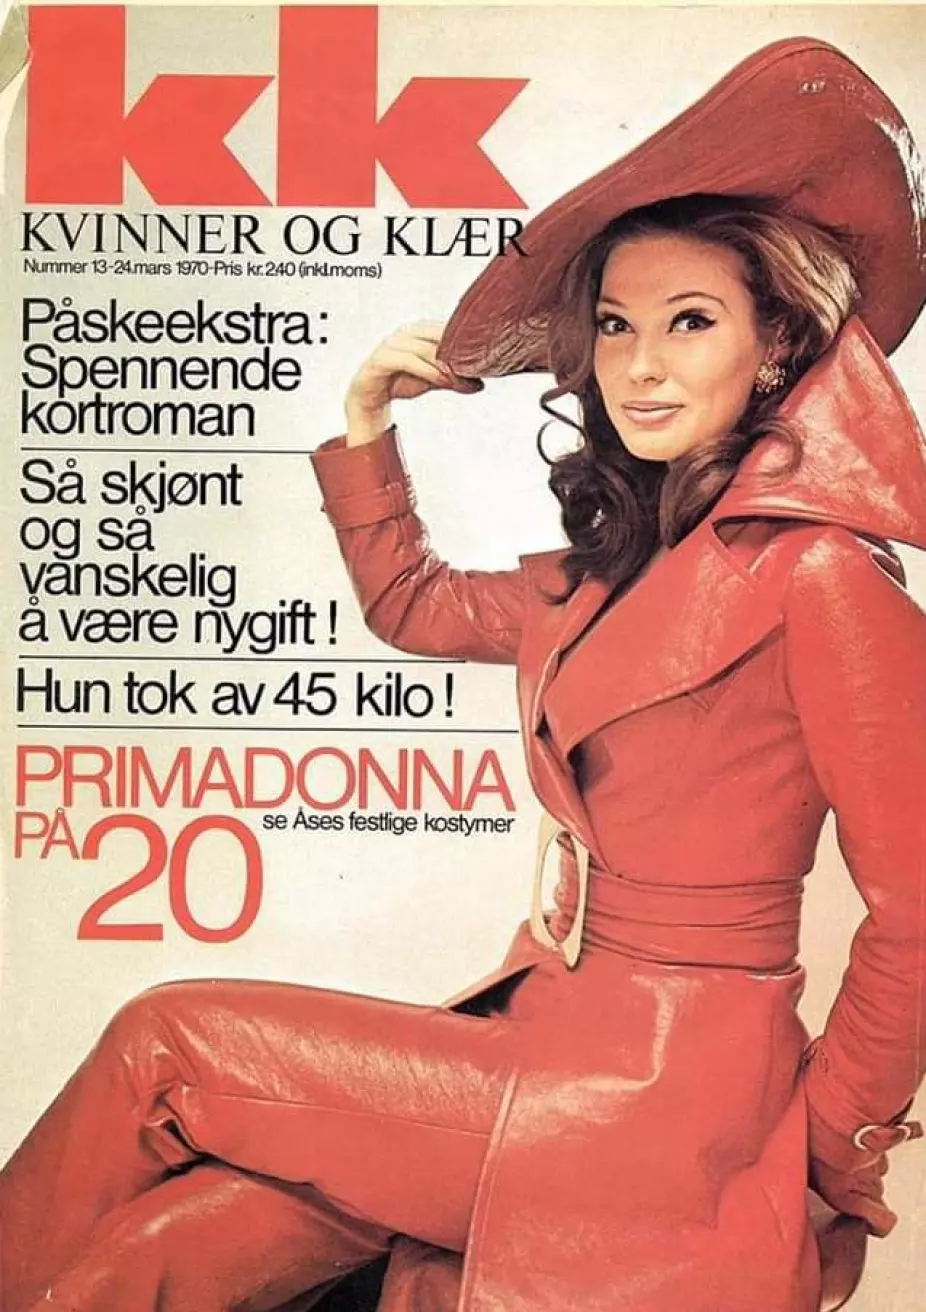 MOTEIKON: Åse Kleveland kjøpte motebilen Saab Sonett i 1968 og var et naturlig valg for magasiner når det var snakk om å vise trender. Kleveland hadde imidlertid andre planer og ble til slutt en av Norges mest markante kulturministre.